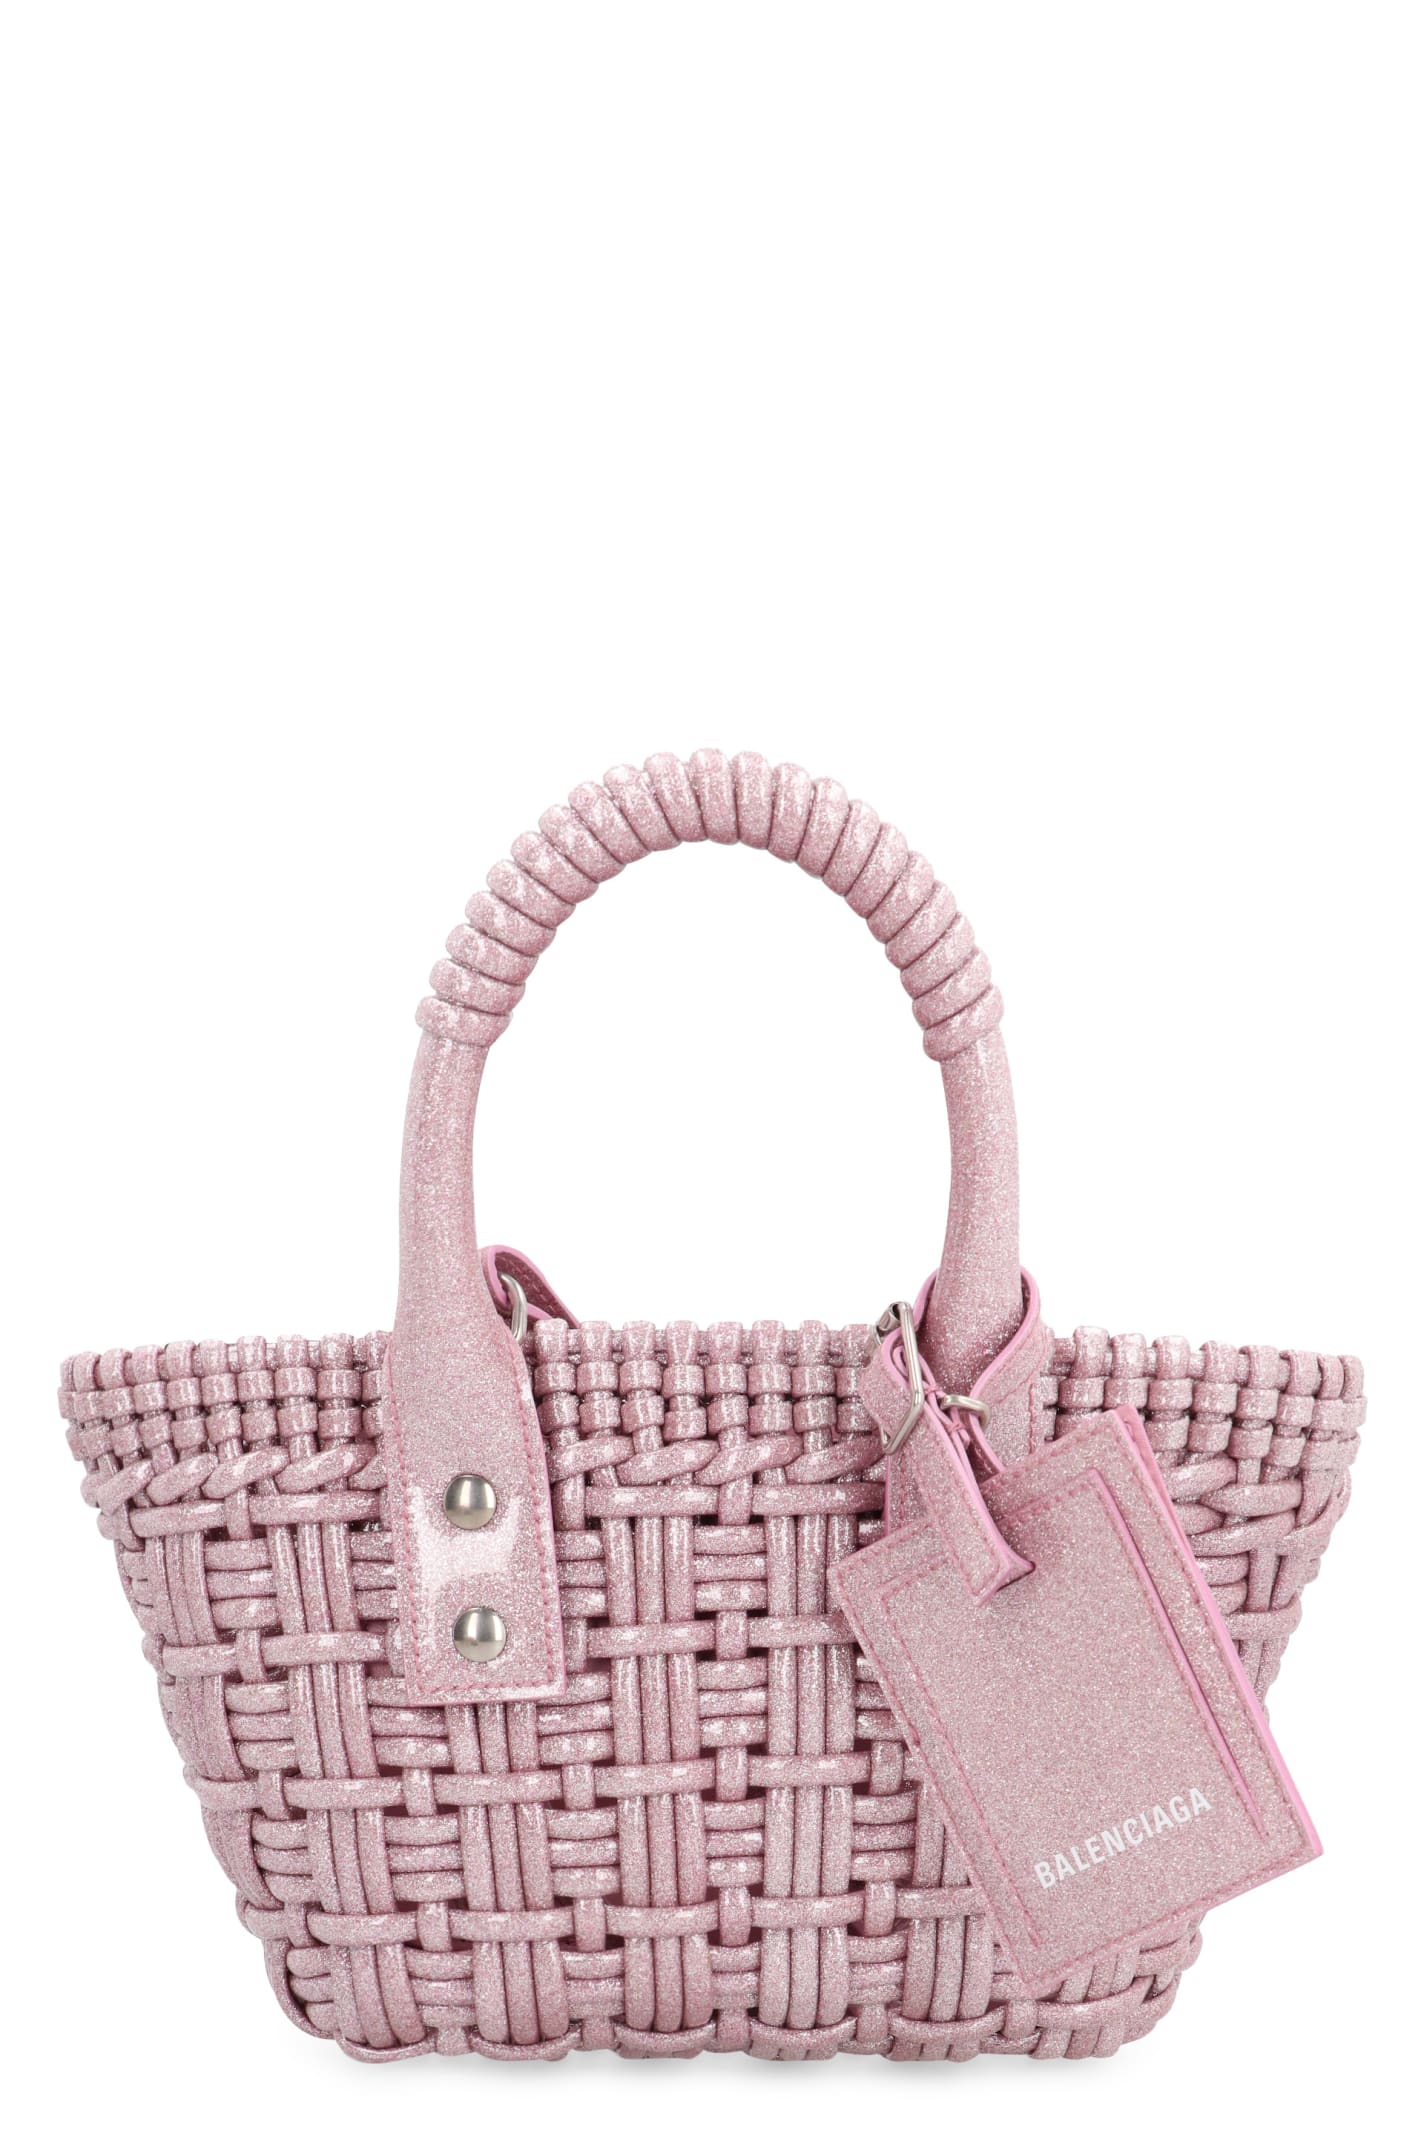 Balenciaga Bistro Xxs Basket Handbag